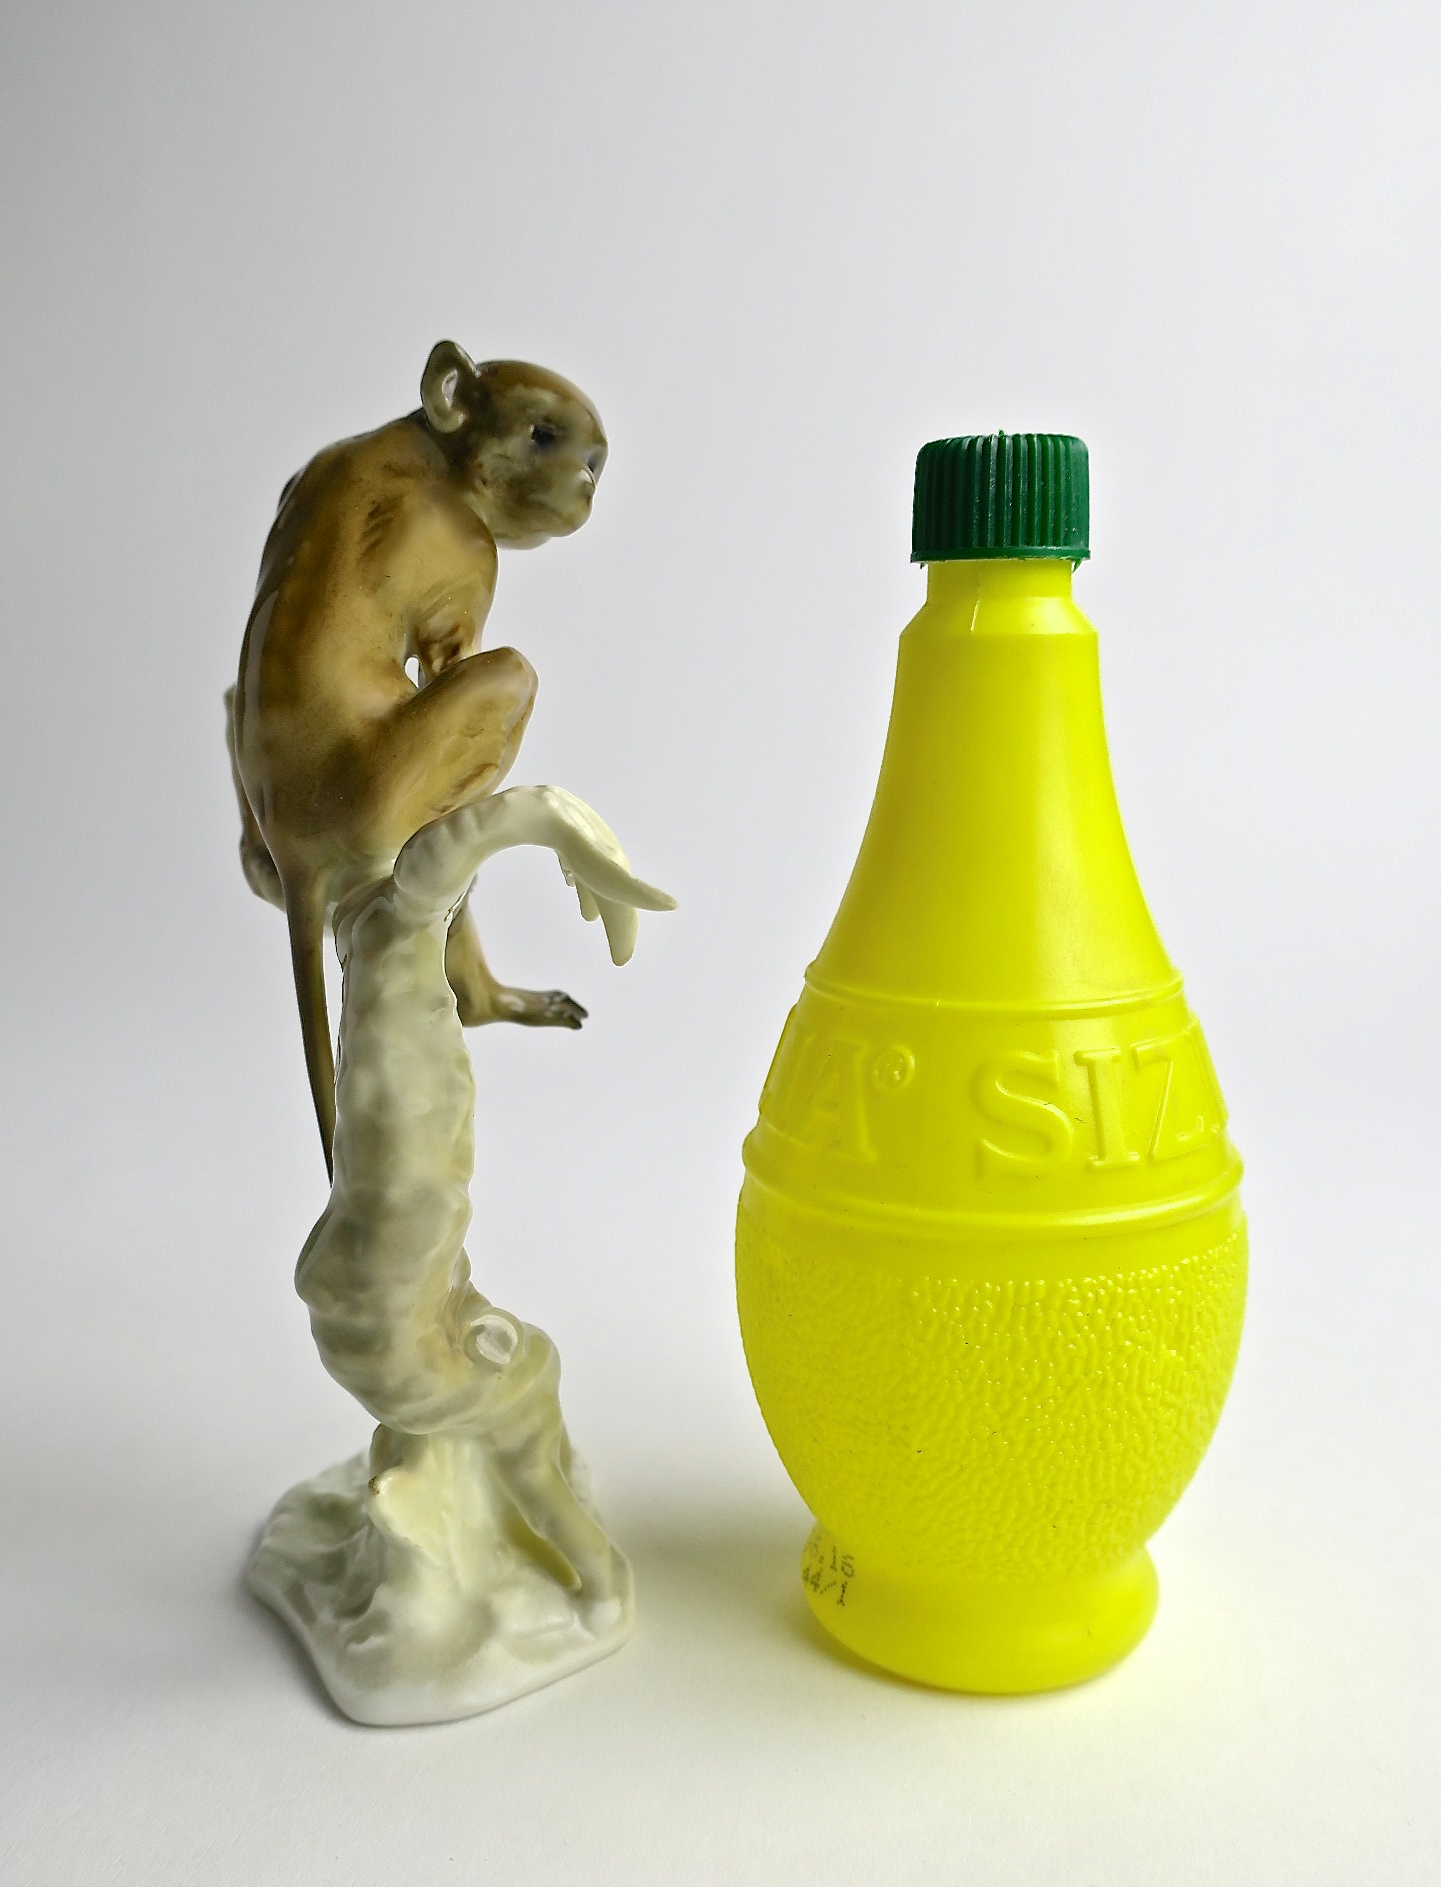 affe monkey exotisch animals hutschenreuther hansachtziger porzellan filigran 50er 1950 fifties handbemalt manufacture porcelain